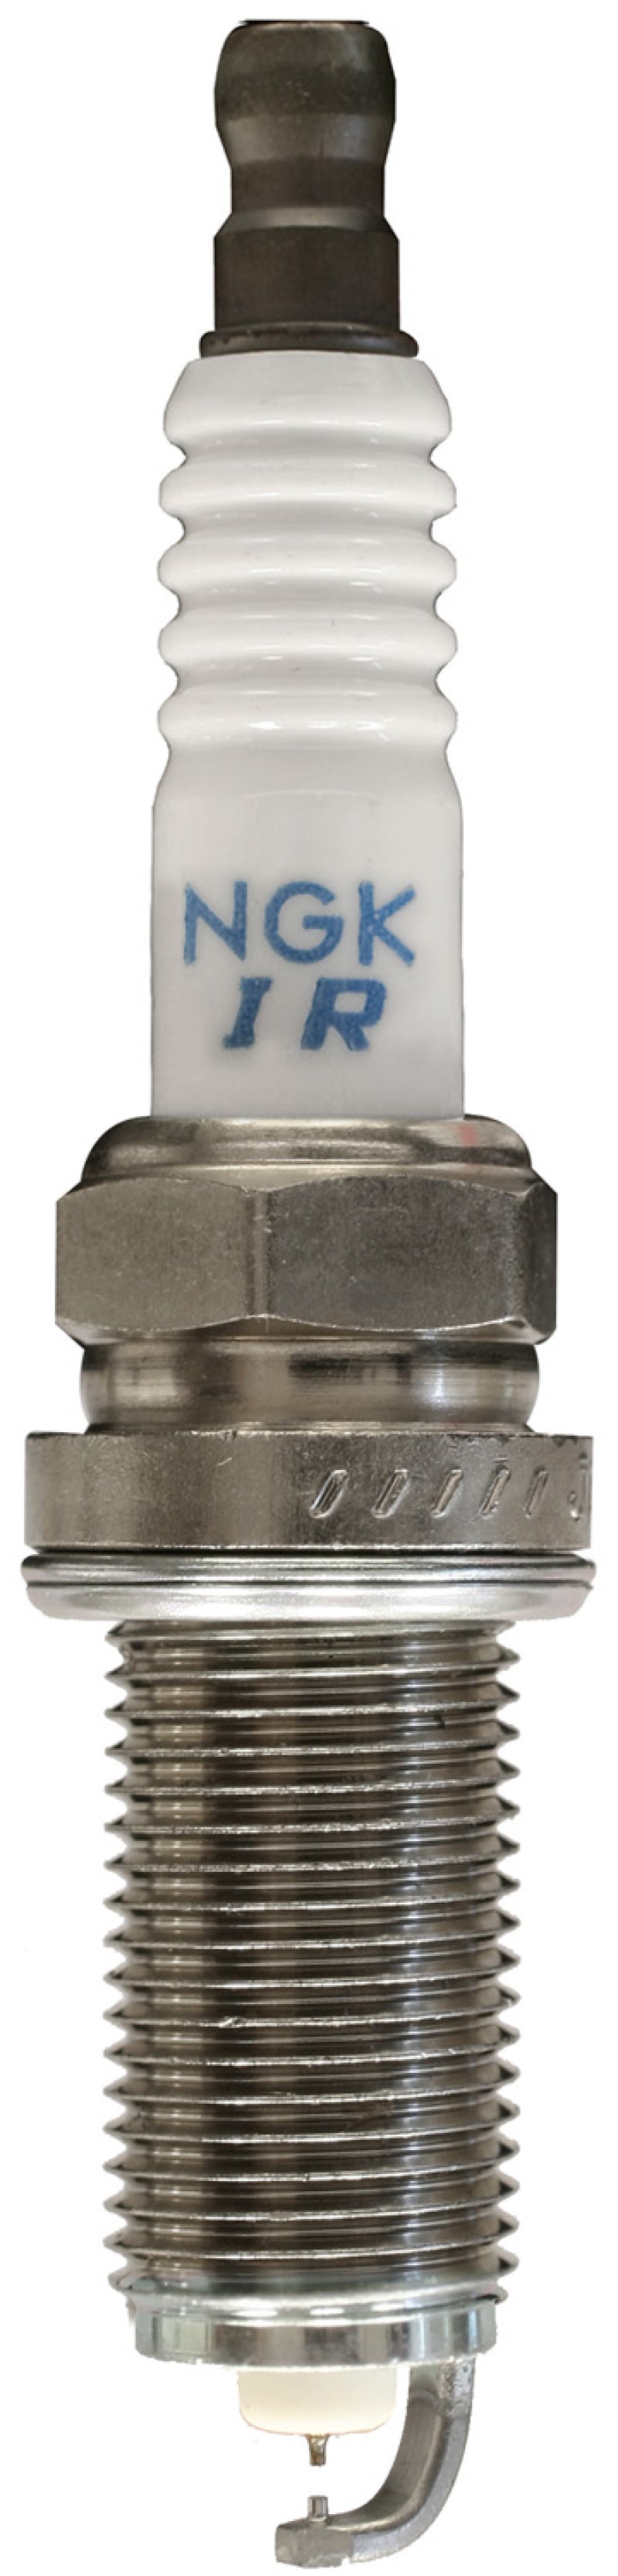 NGK Iridium/Platinum Spark Plug Box of 4 (DILFR5A11)